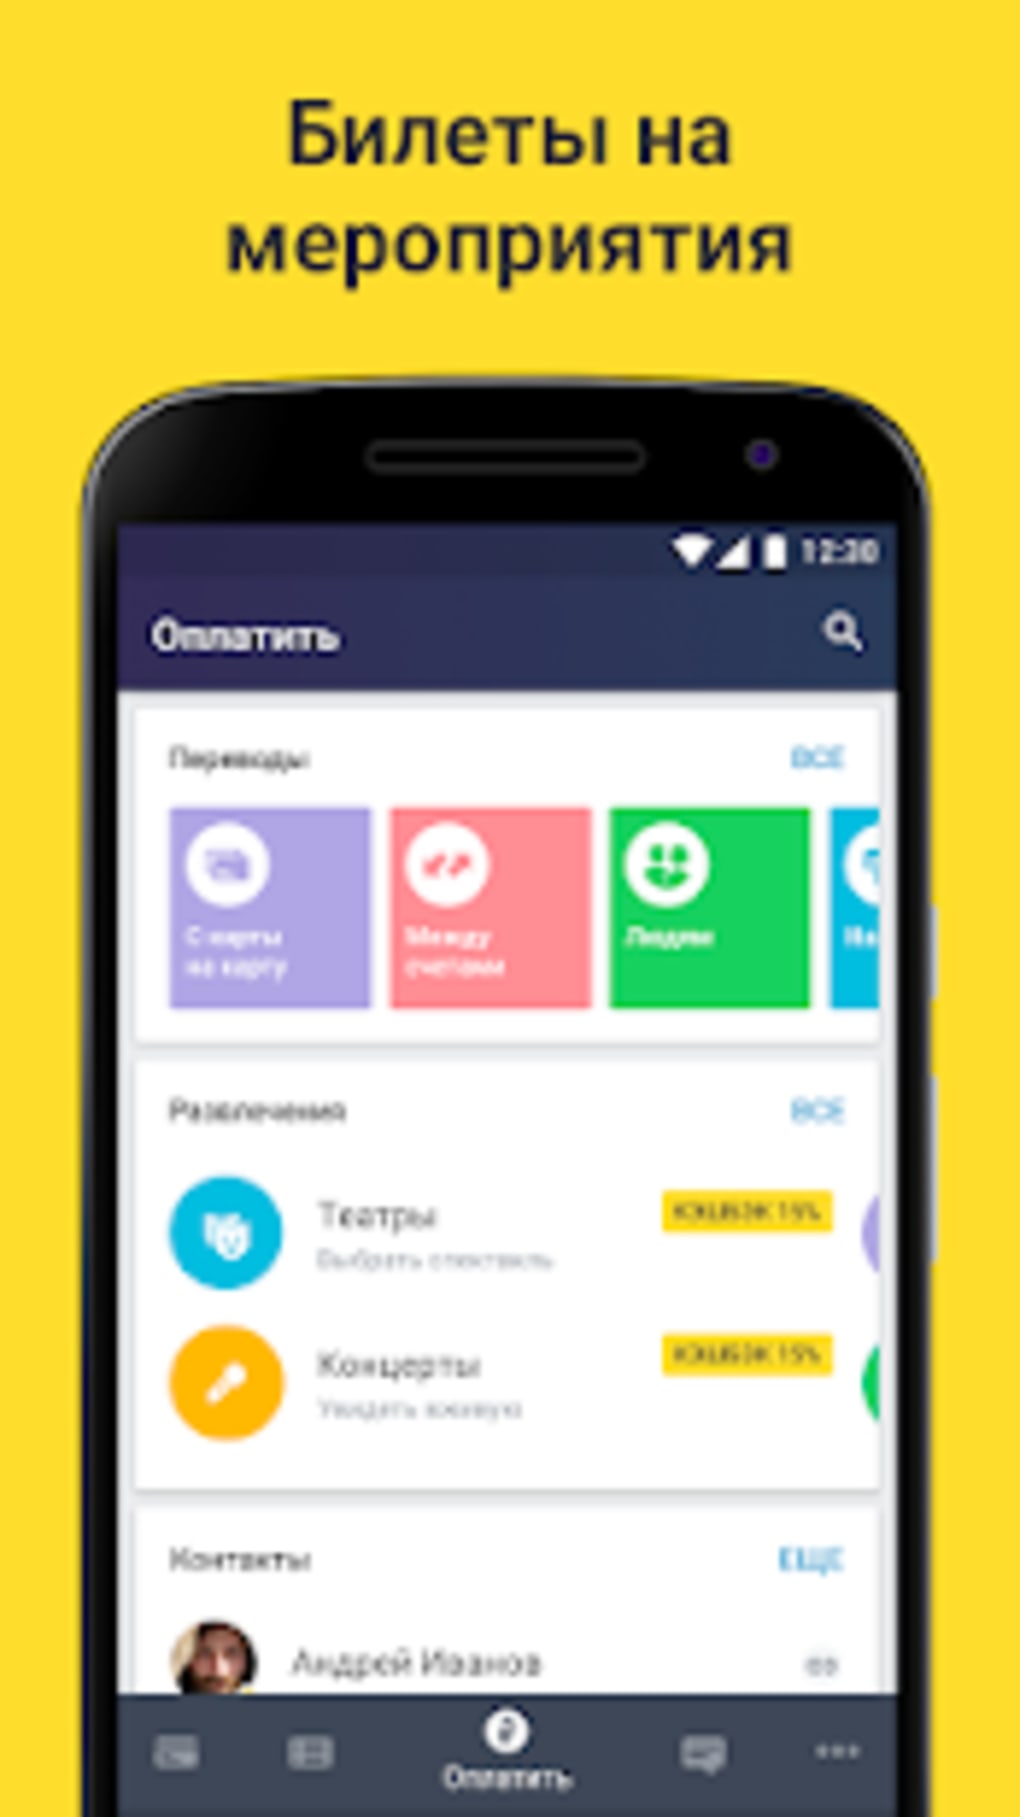 Обновить приложение тинькофф банк на телефоне андроид